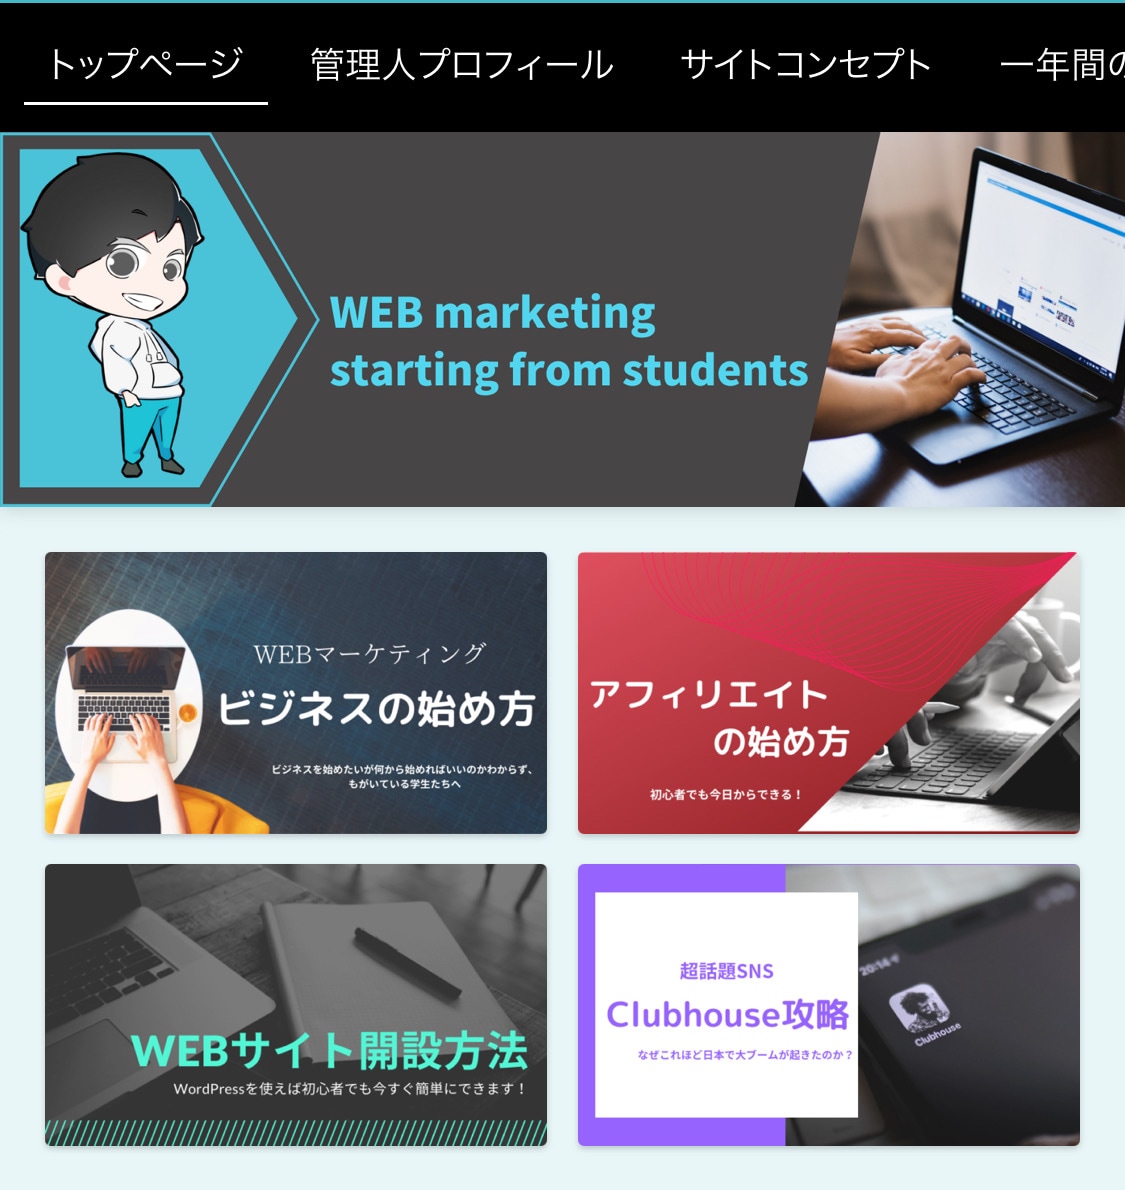 ブログメディア『大学生から始めるWEBマーケティング』